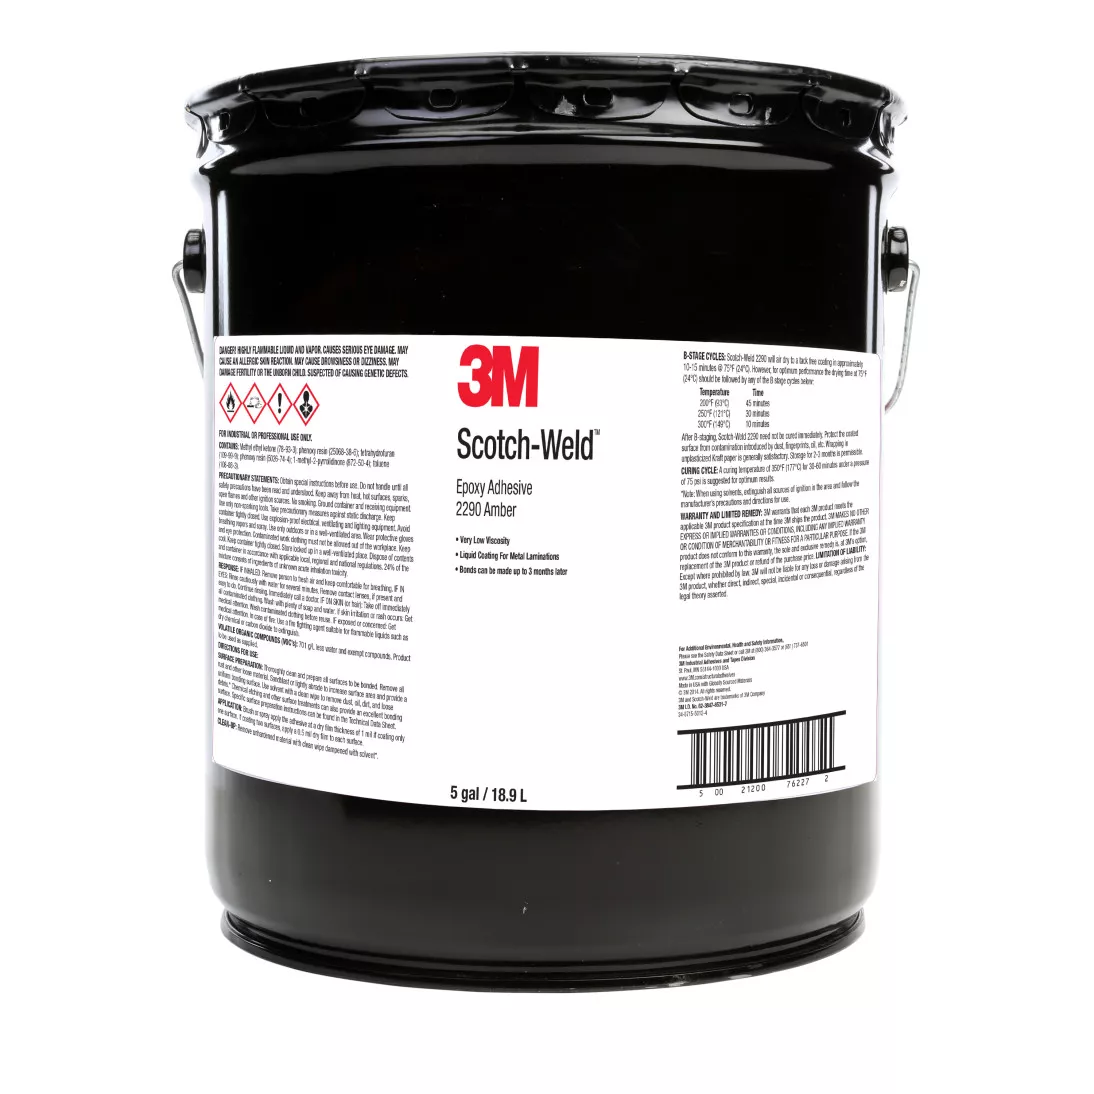 3M™ Scotch-Weld™ Epoxy Adhesive/Coating 2290, Amber, 5 Gallon Drum
(Pail)